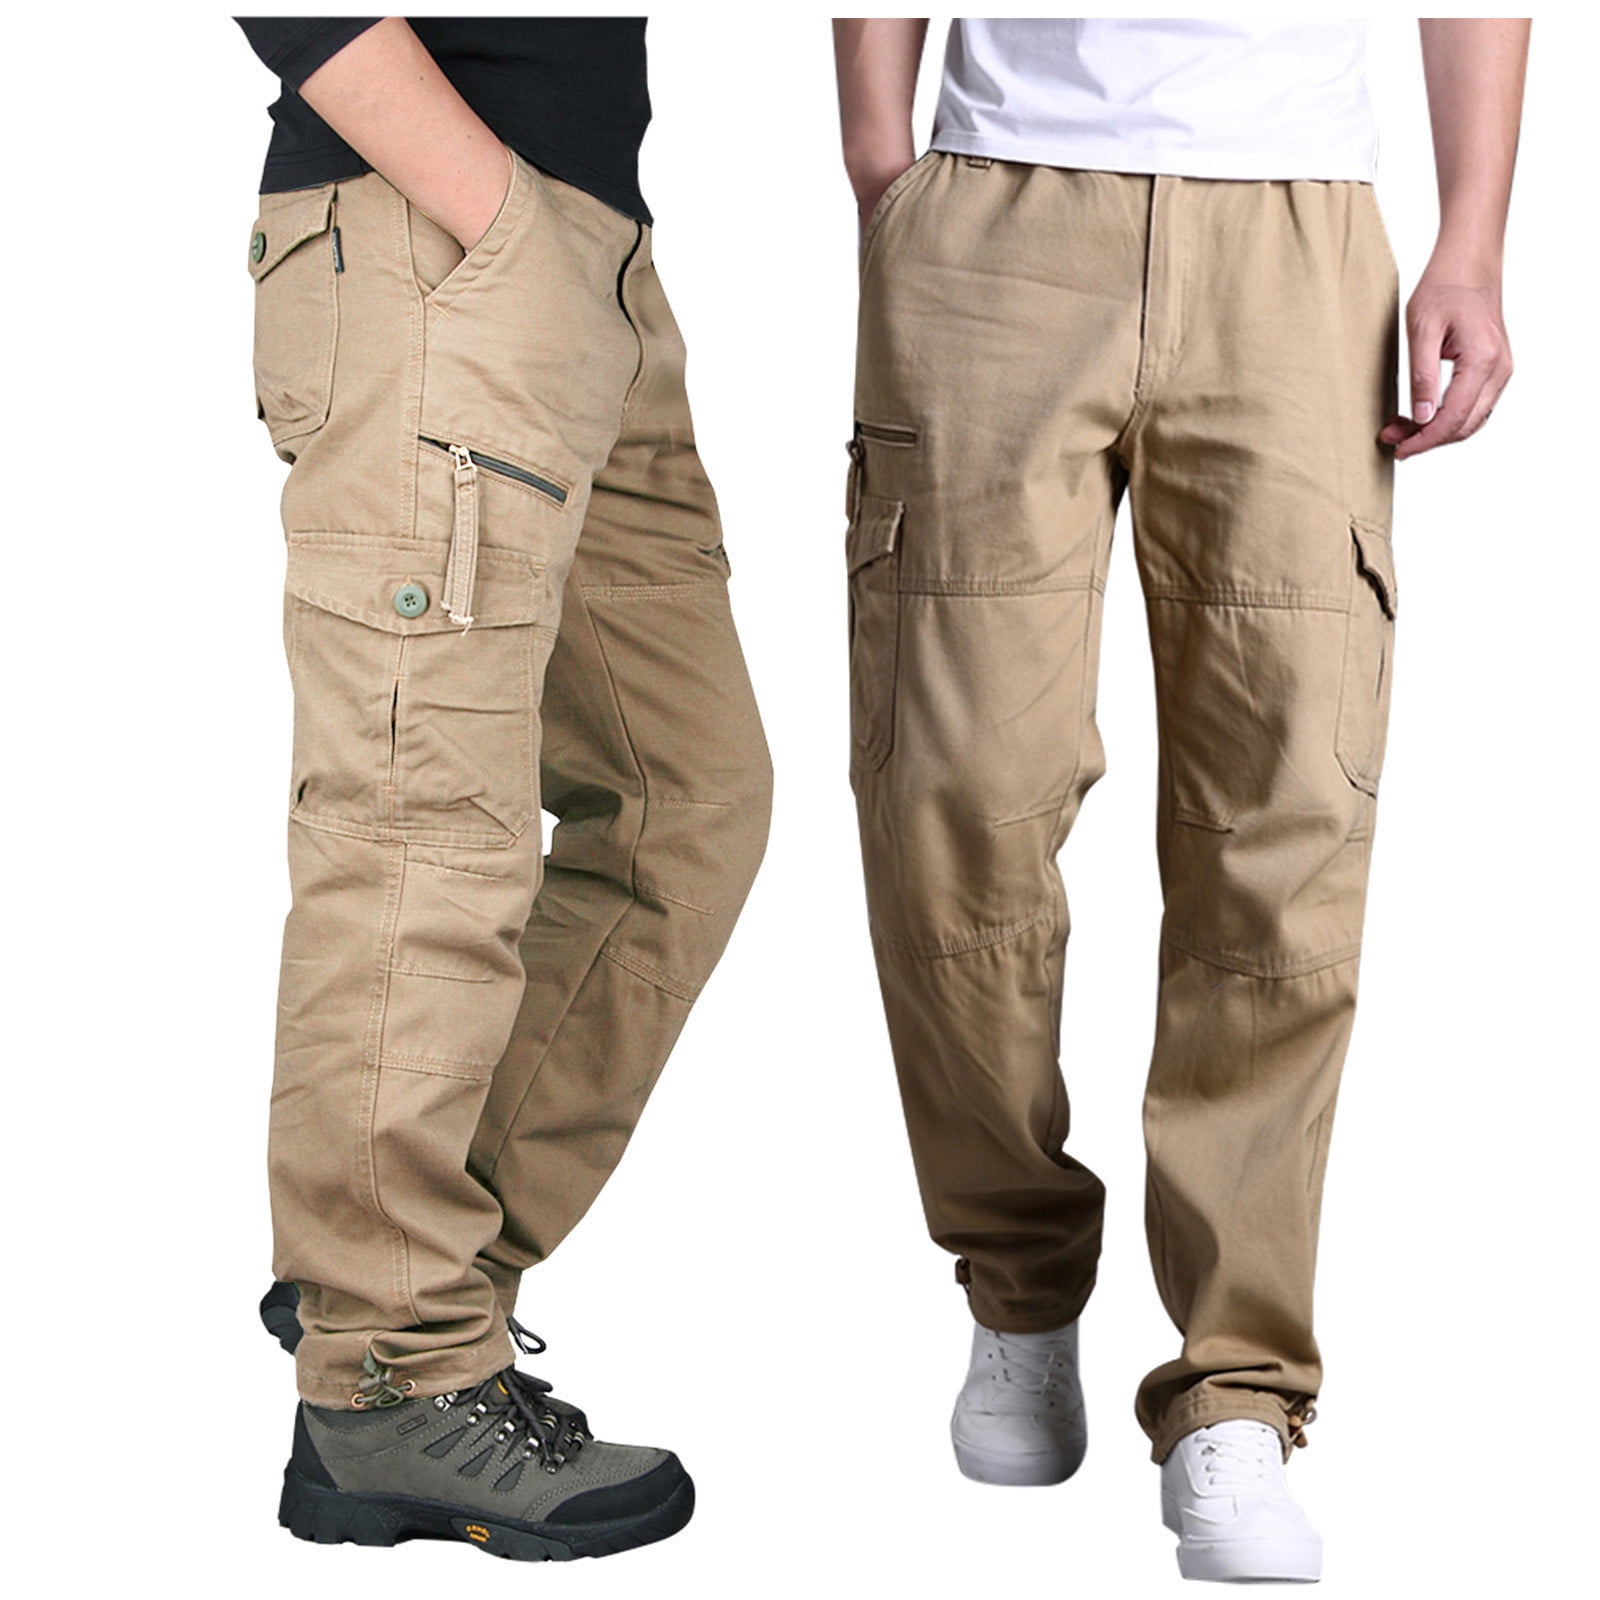 Hvyesh Men's Cargo Pants Plus Size Multi Pockets Pants Work Tactical ...